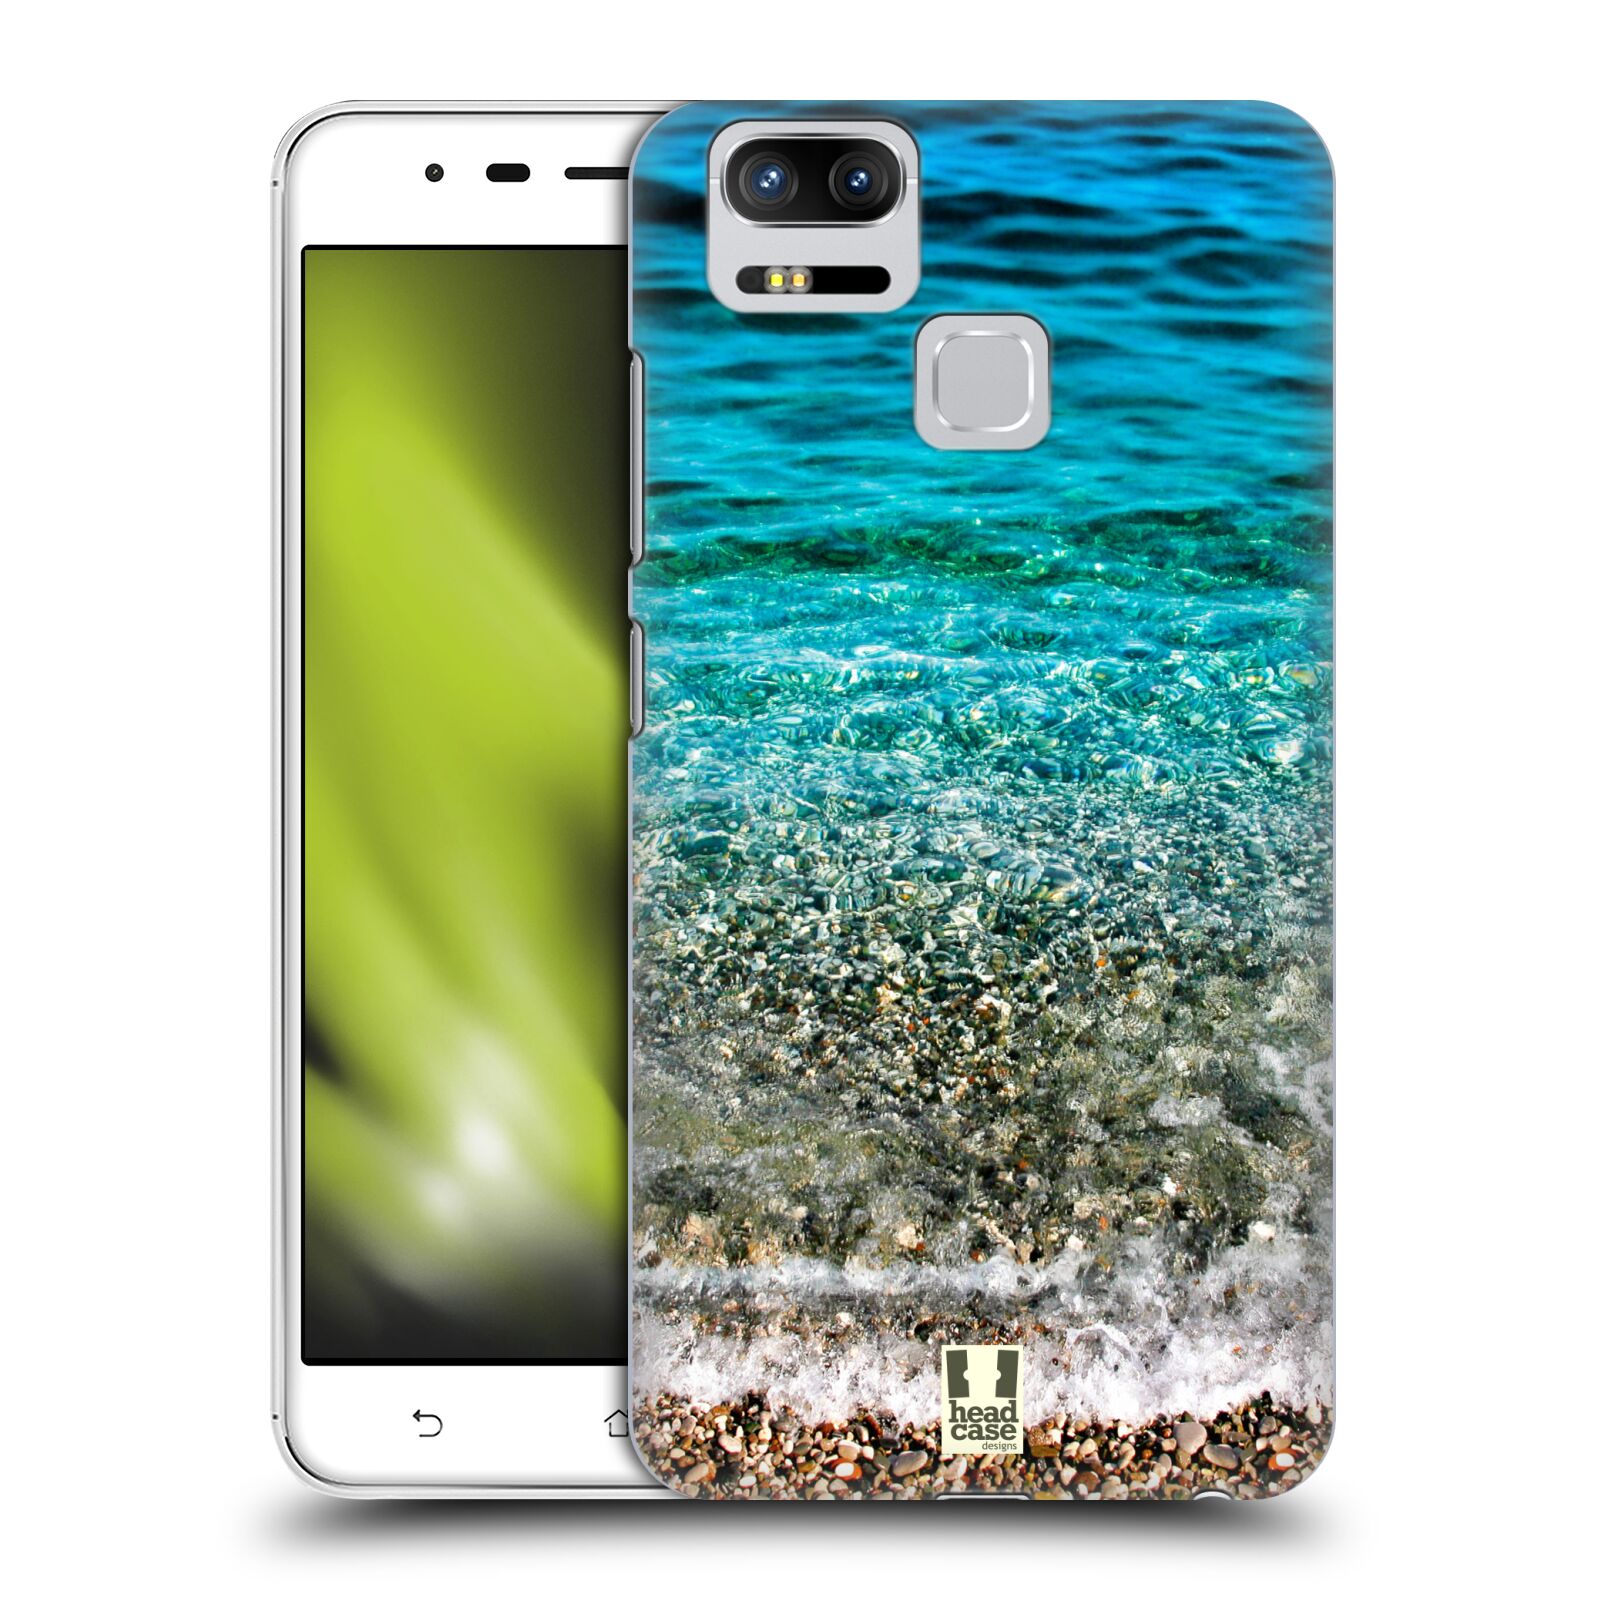 HEAD CASE plastový obal na mobil Asus Zenfone 3 Zoom ZE553KL vzor Pláže a Moře PRŮZRAČNÉ MOŘE S OBLÁZKY